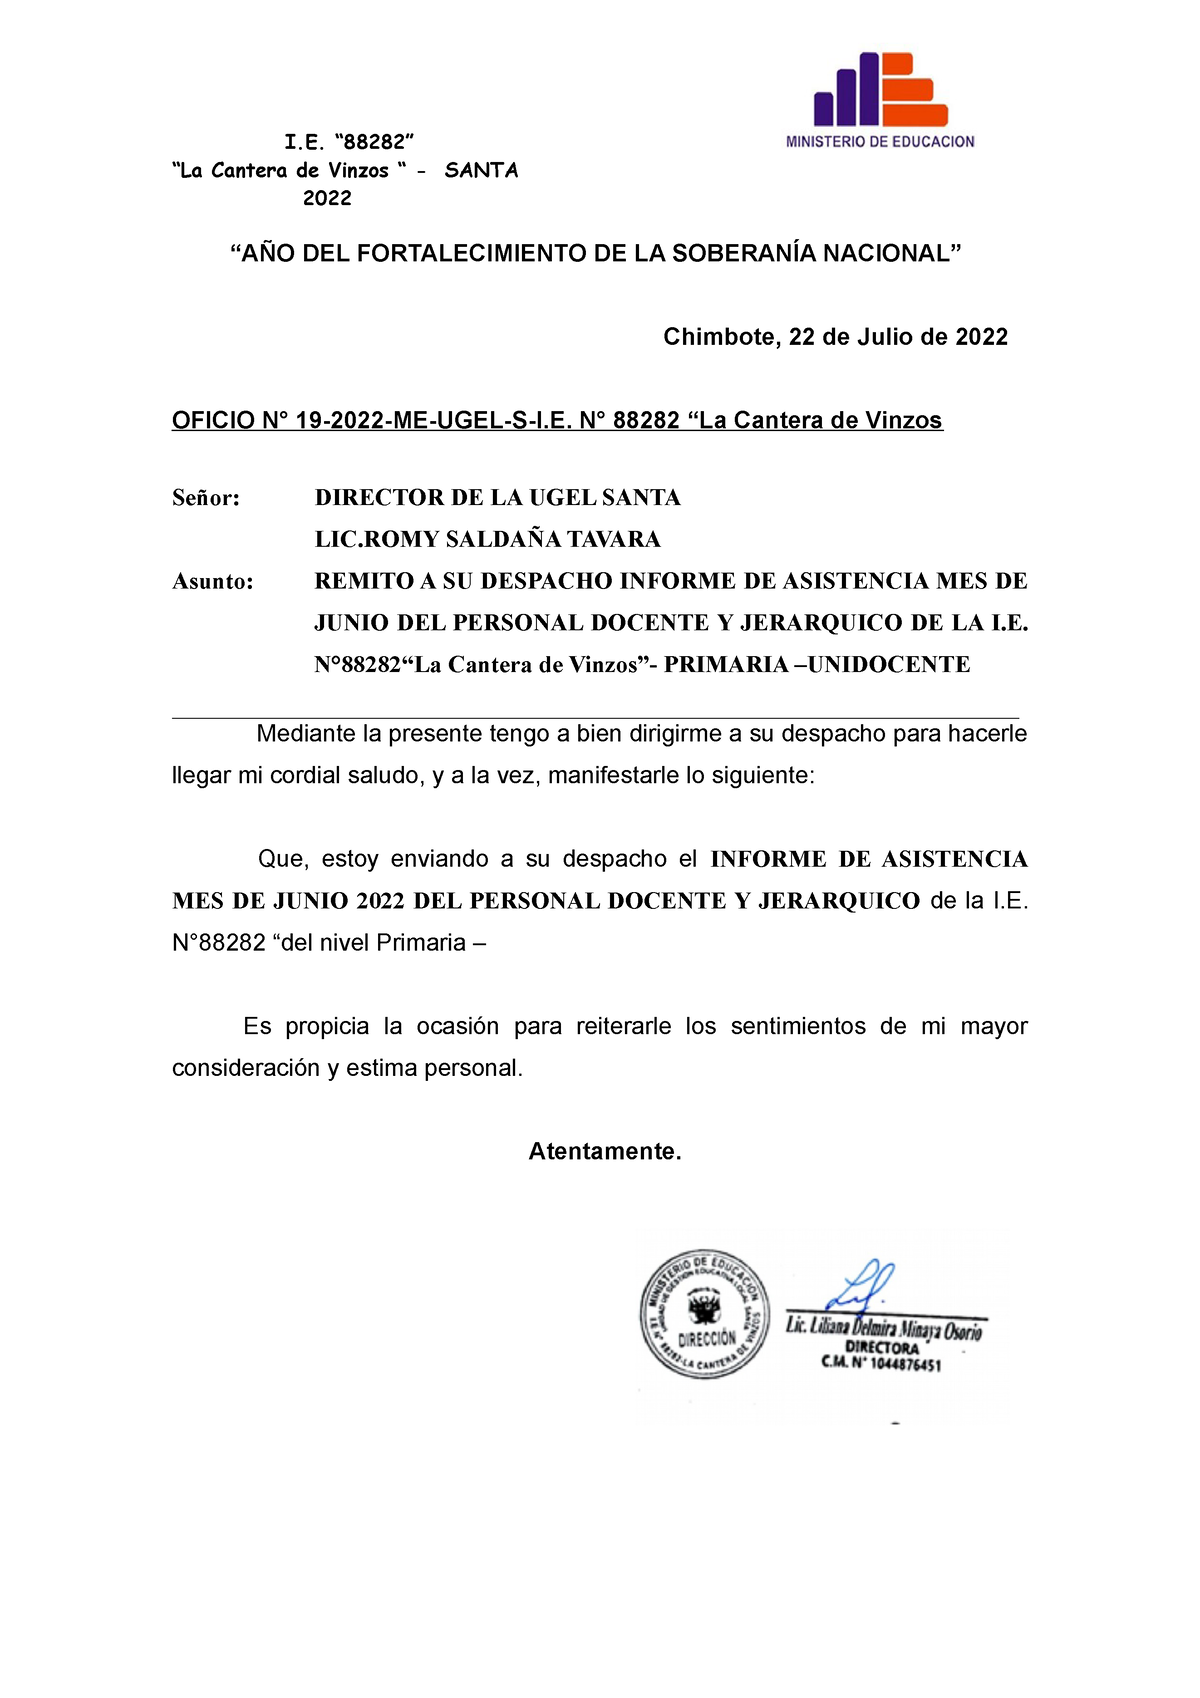 Oficio N°19 Informe DE Asistencia Junio 2022 DEL Personal Docente Y  Jerarquico  - I. - Studocu